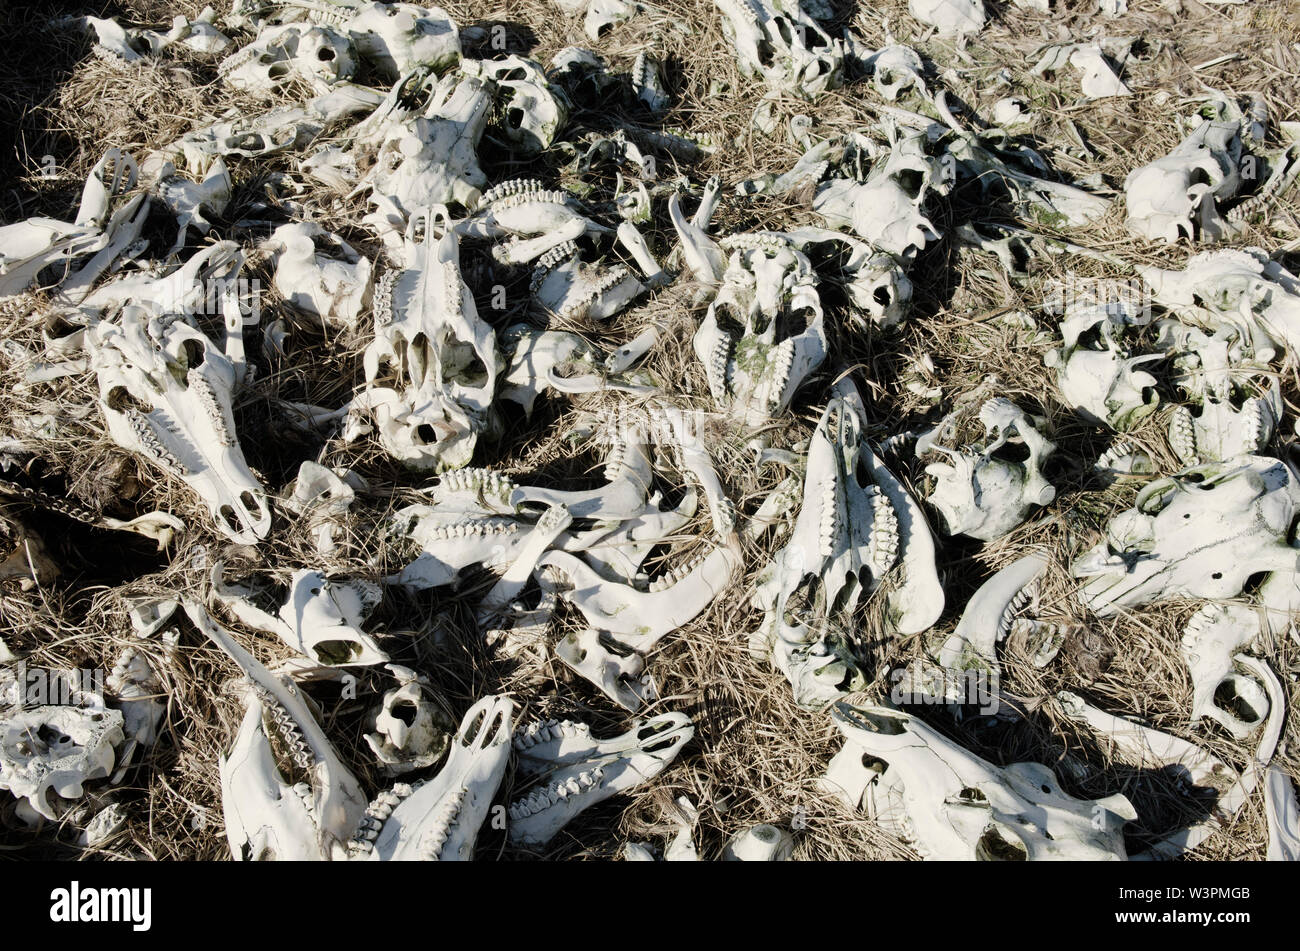 sun dried deer skulls and bones Stock Photo